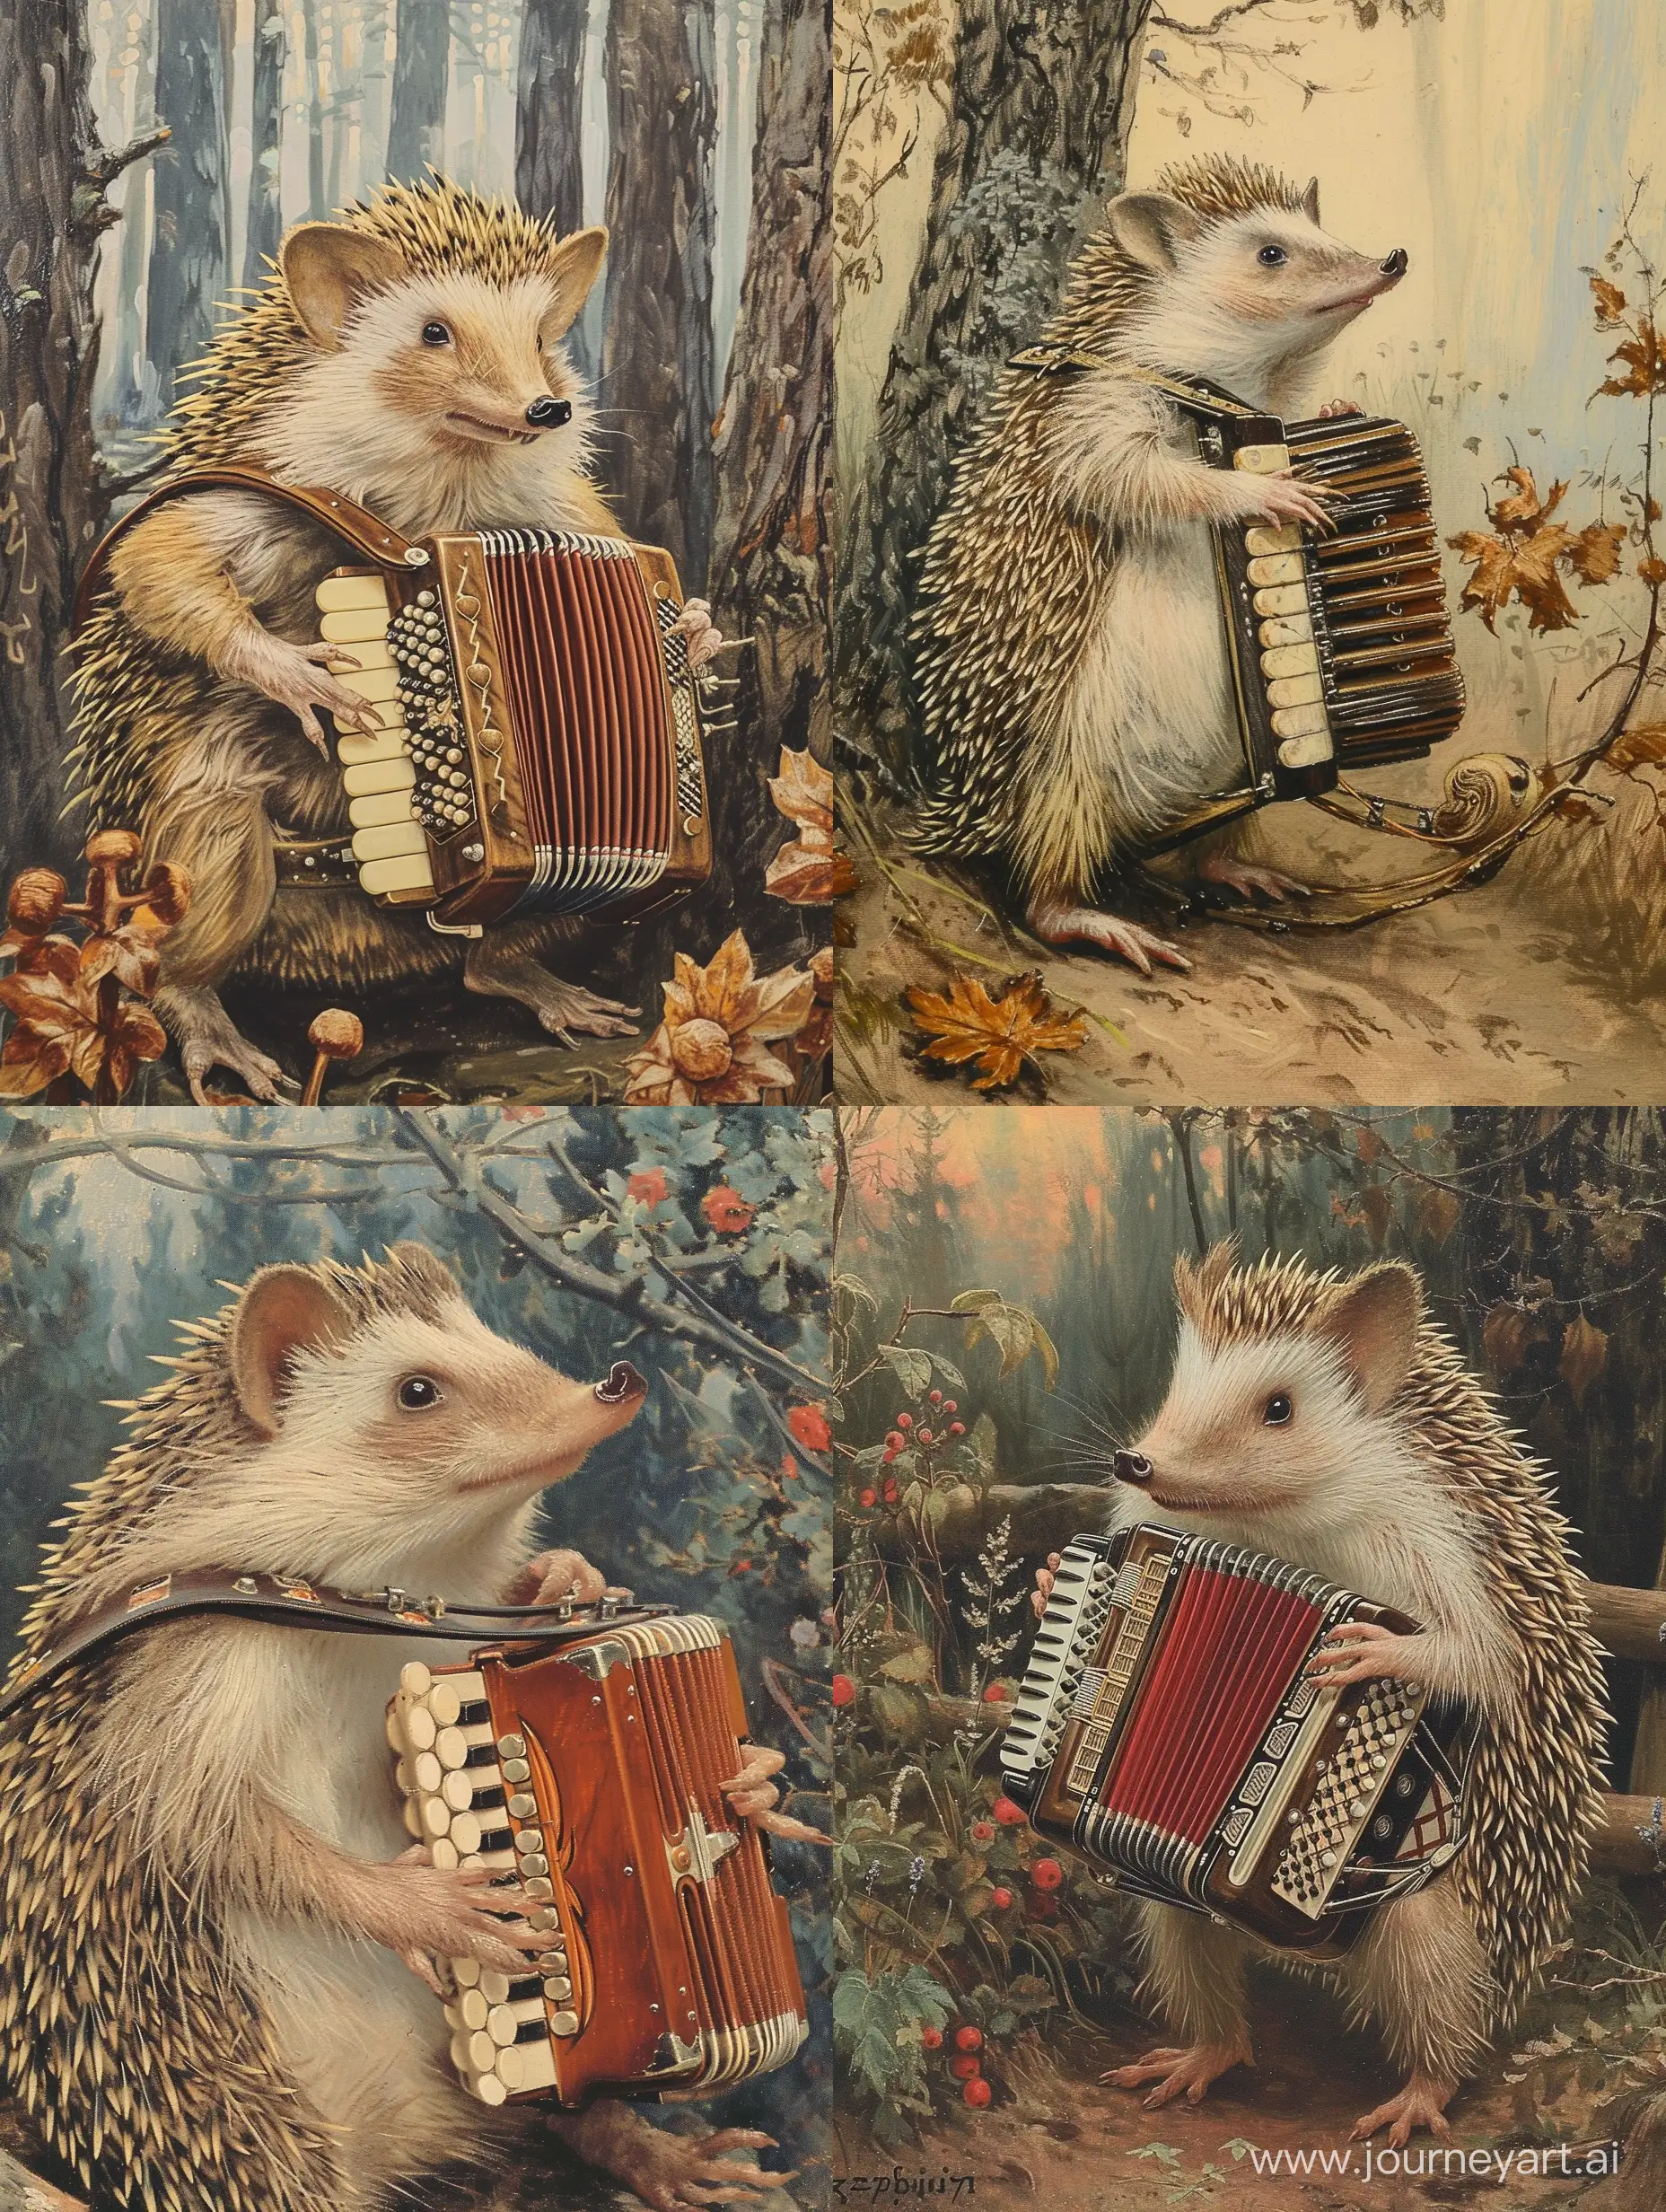 Ёж играет на гармошке, открытка в стиле Зарубина